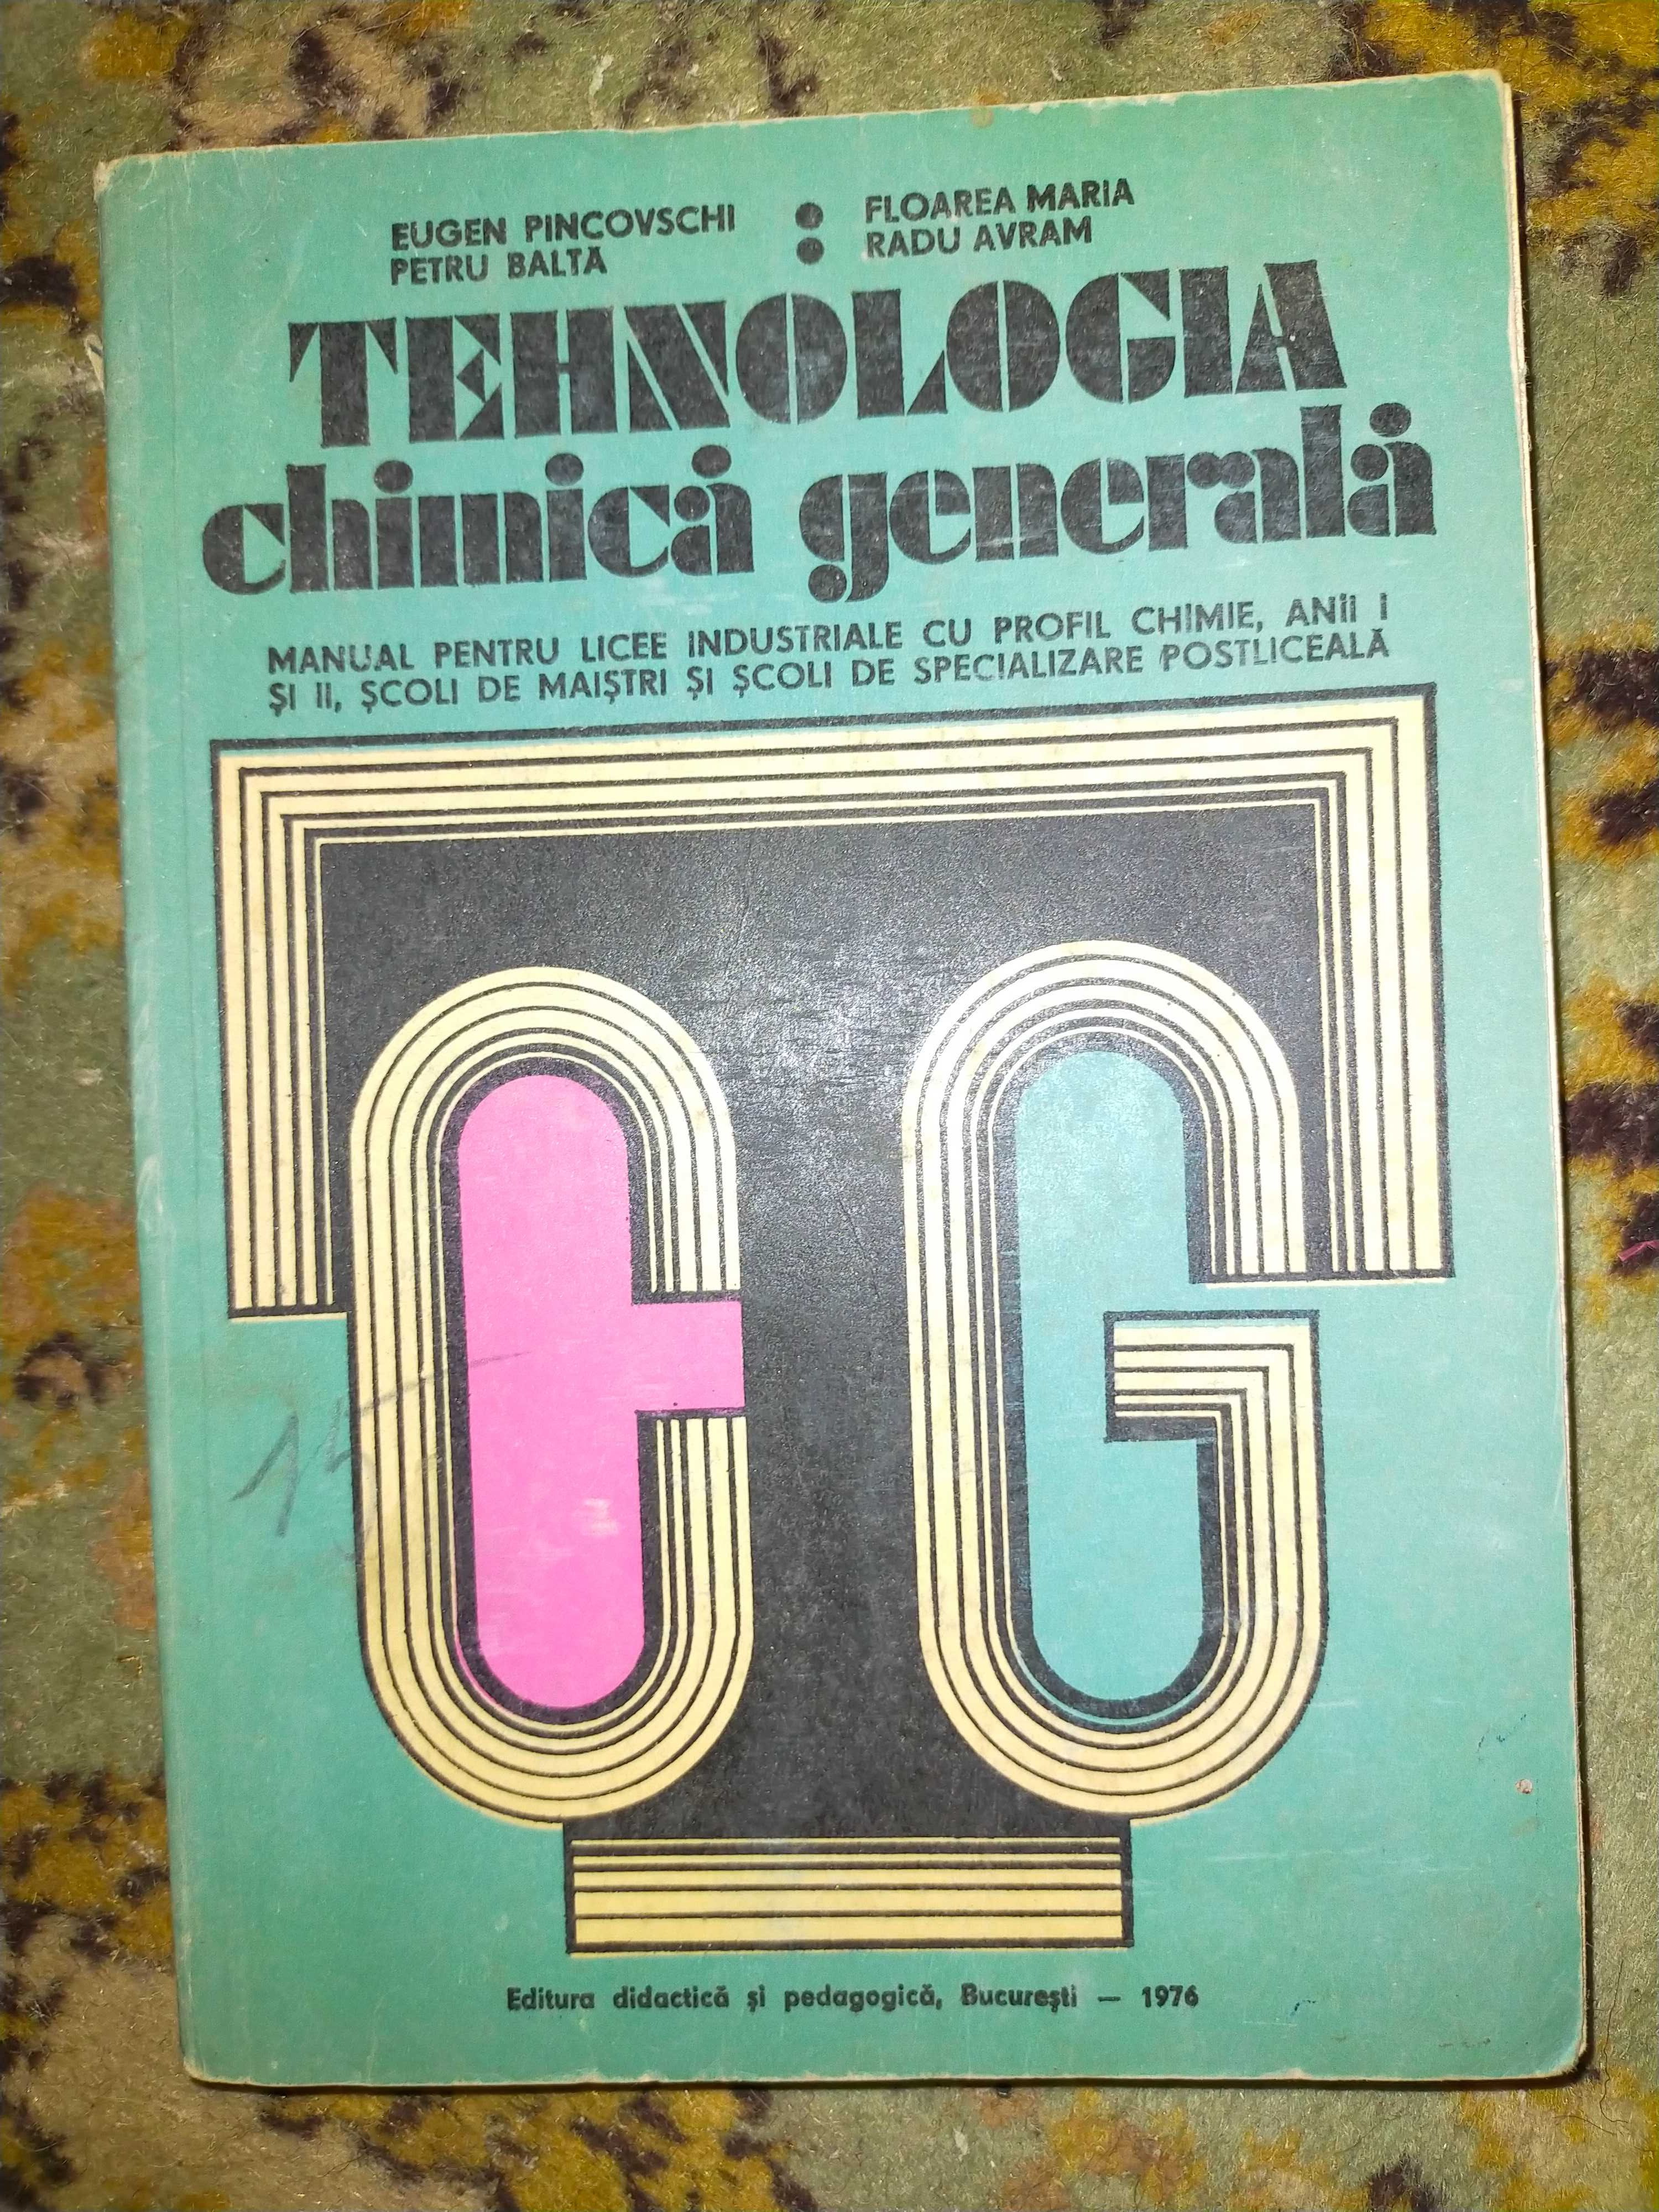 Tehnologia chimică generală '76